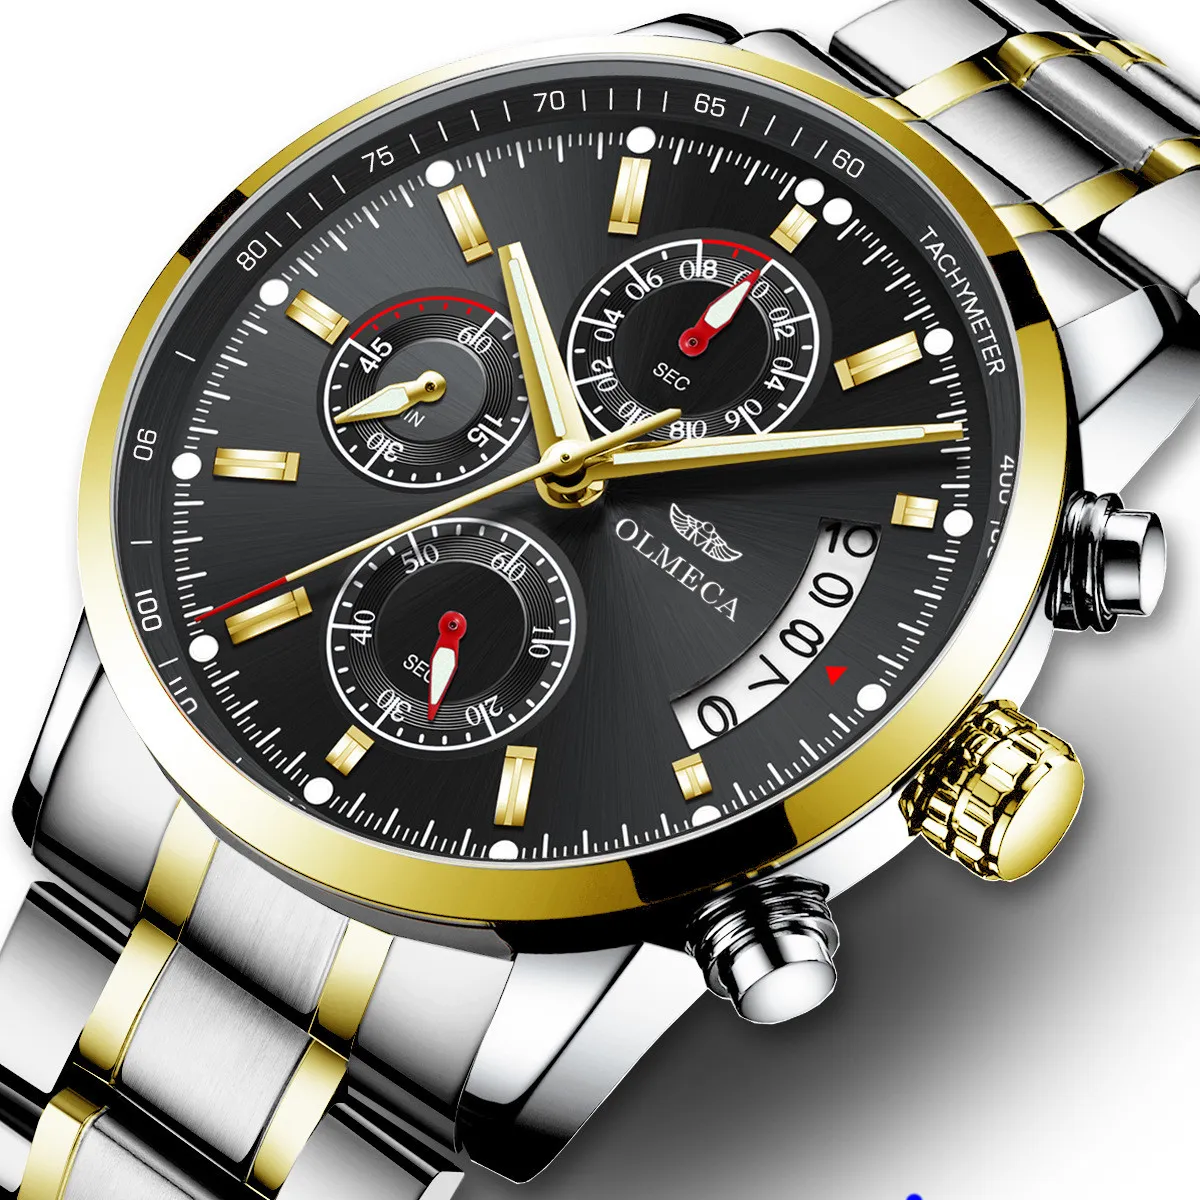 CWP Hommes Montres Top Marque De Luxe Mâle En Cuir Étanche Sport Quartz Chronographe Militaire Montre-Bracelet Horloge Relogio Masculino Montres-bracelets montre de luxe x6